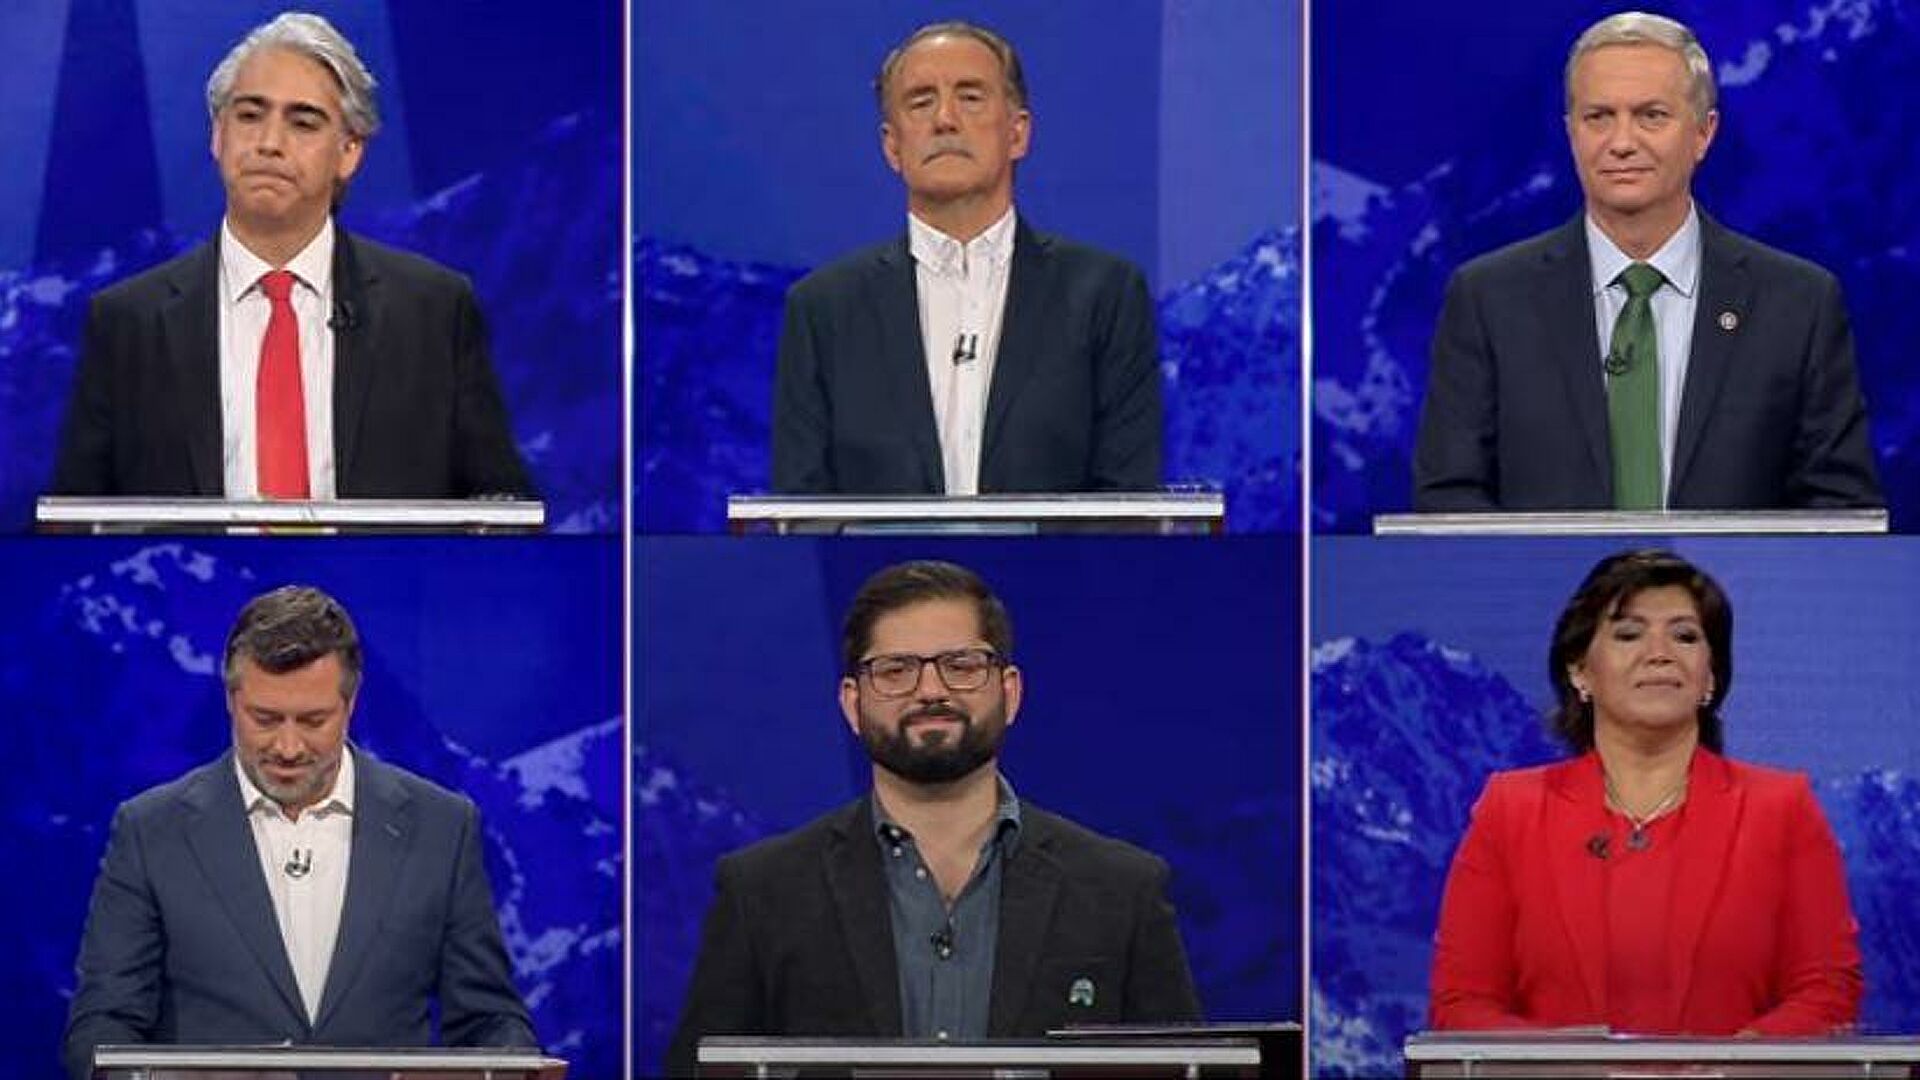 Anatel adelantó horario del debate presidencial del 15 de noviembre: Será a las 20 horas